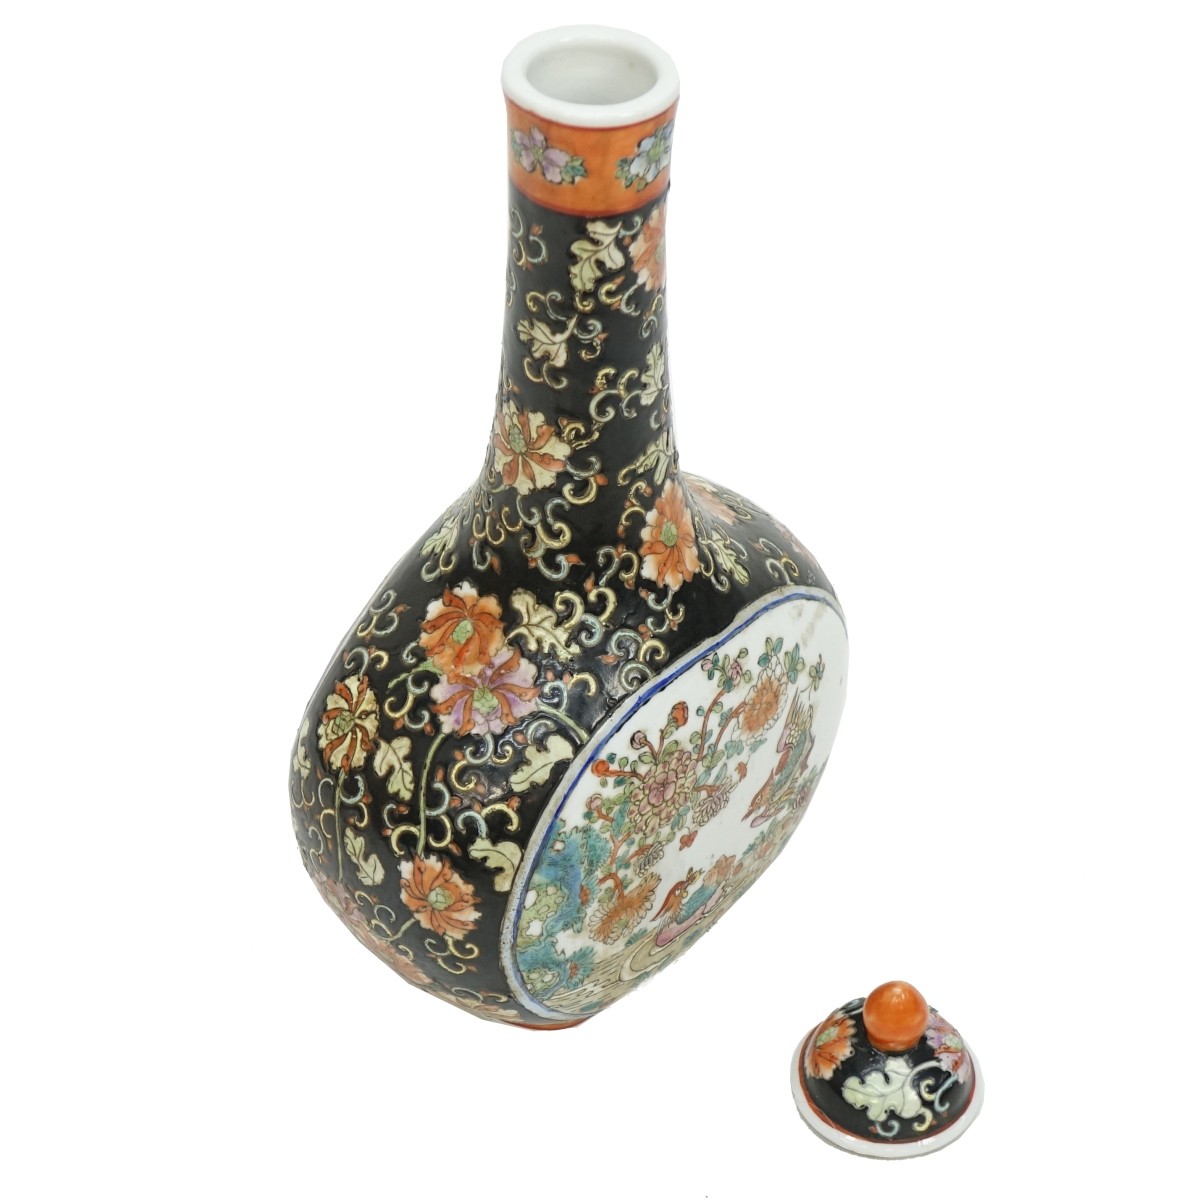 Large 20th C. Chinese Porcelain Bottle Vase